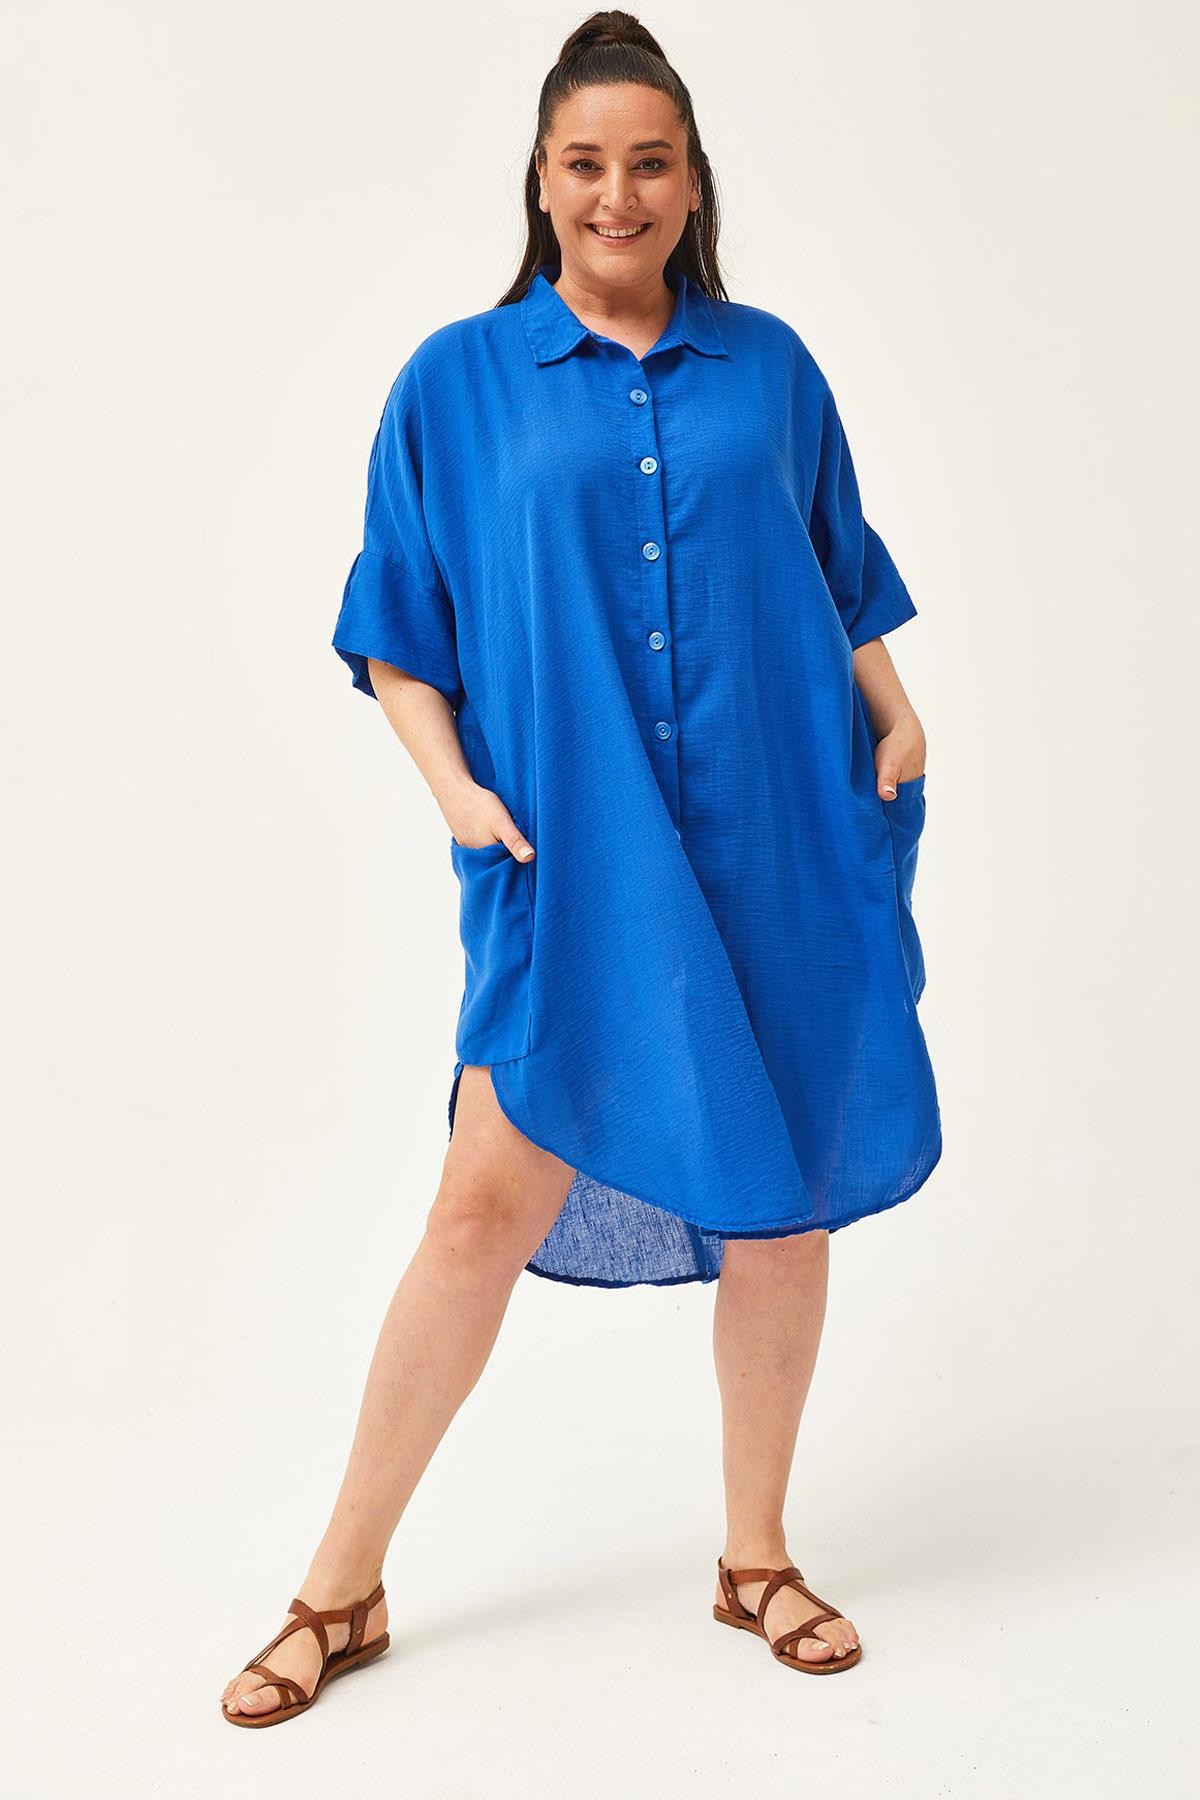 Kadın Büyük Beden Düşük Kol Ekstra Rahat Kalıp Keten Gömlek Elbise - Mavi